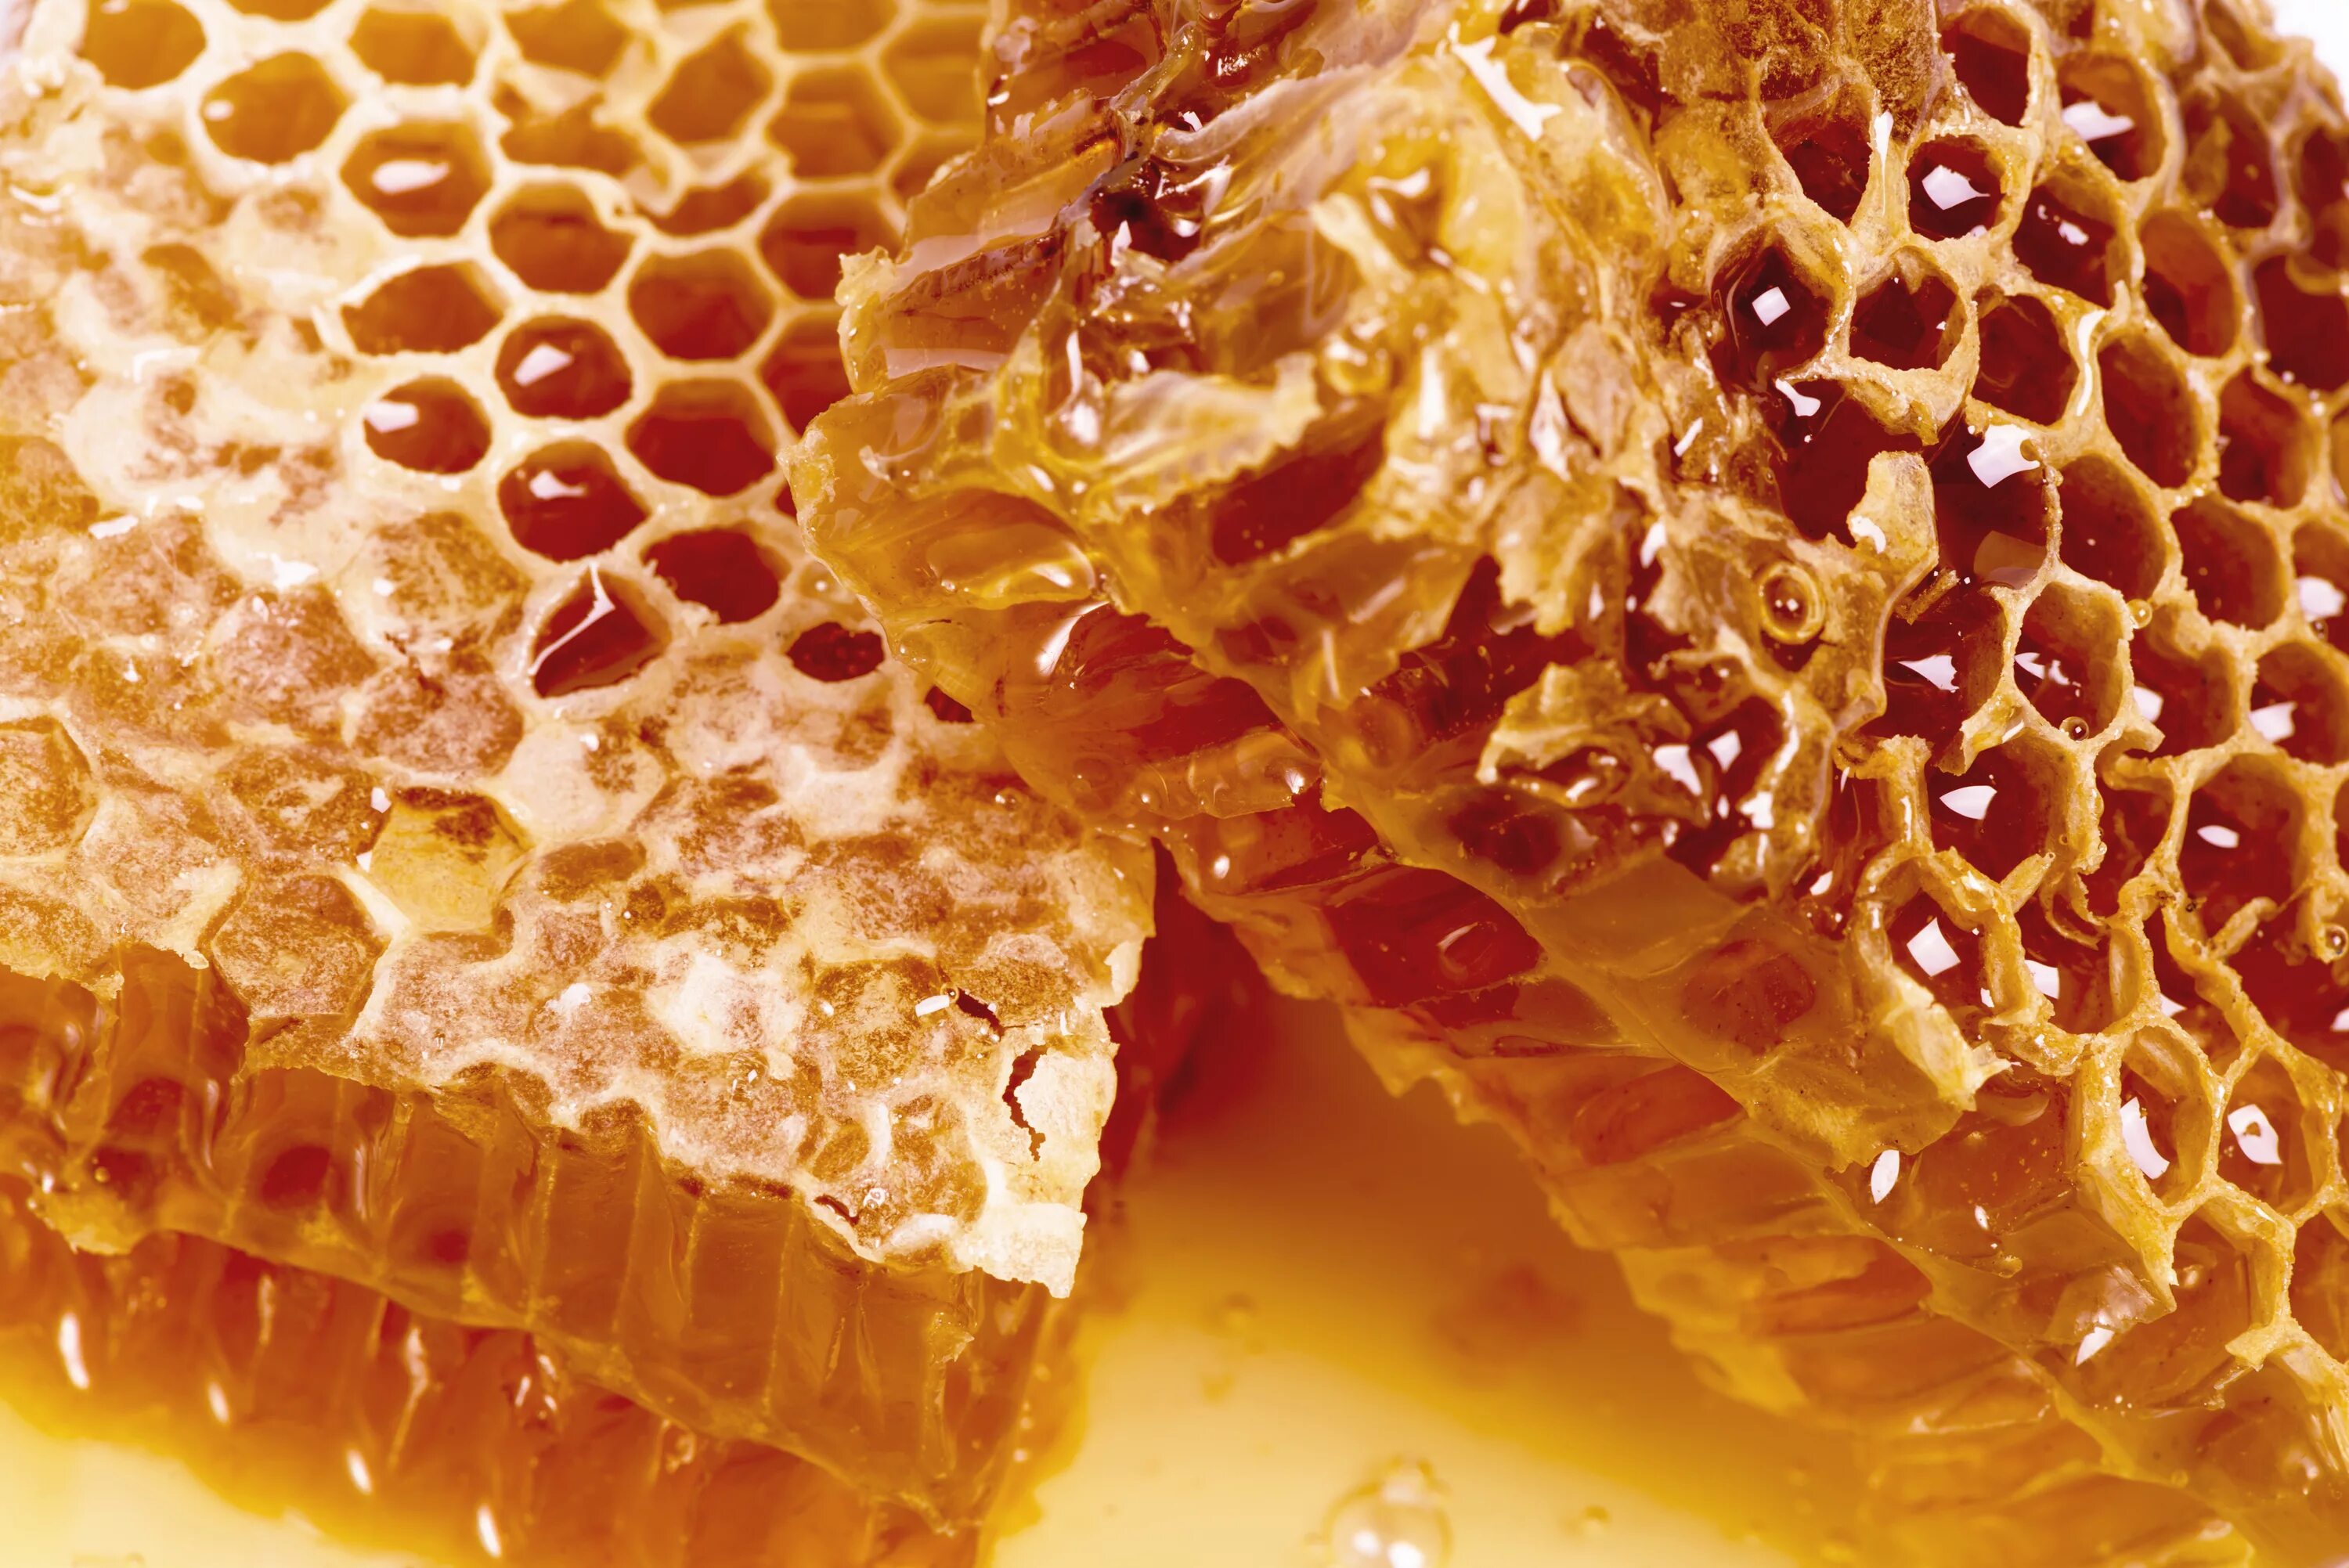 Big honey. Мёд в сотах. Соты пчелиные. Пчелиные соты с медом. Пчелиный воск.